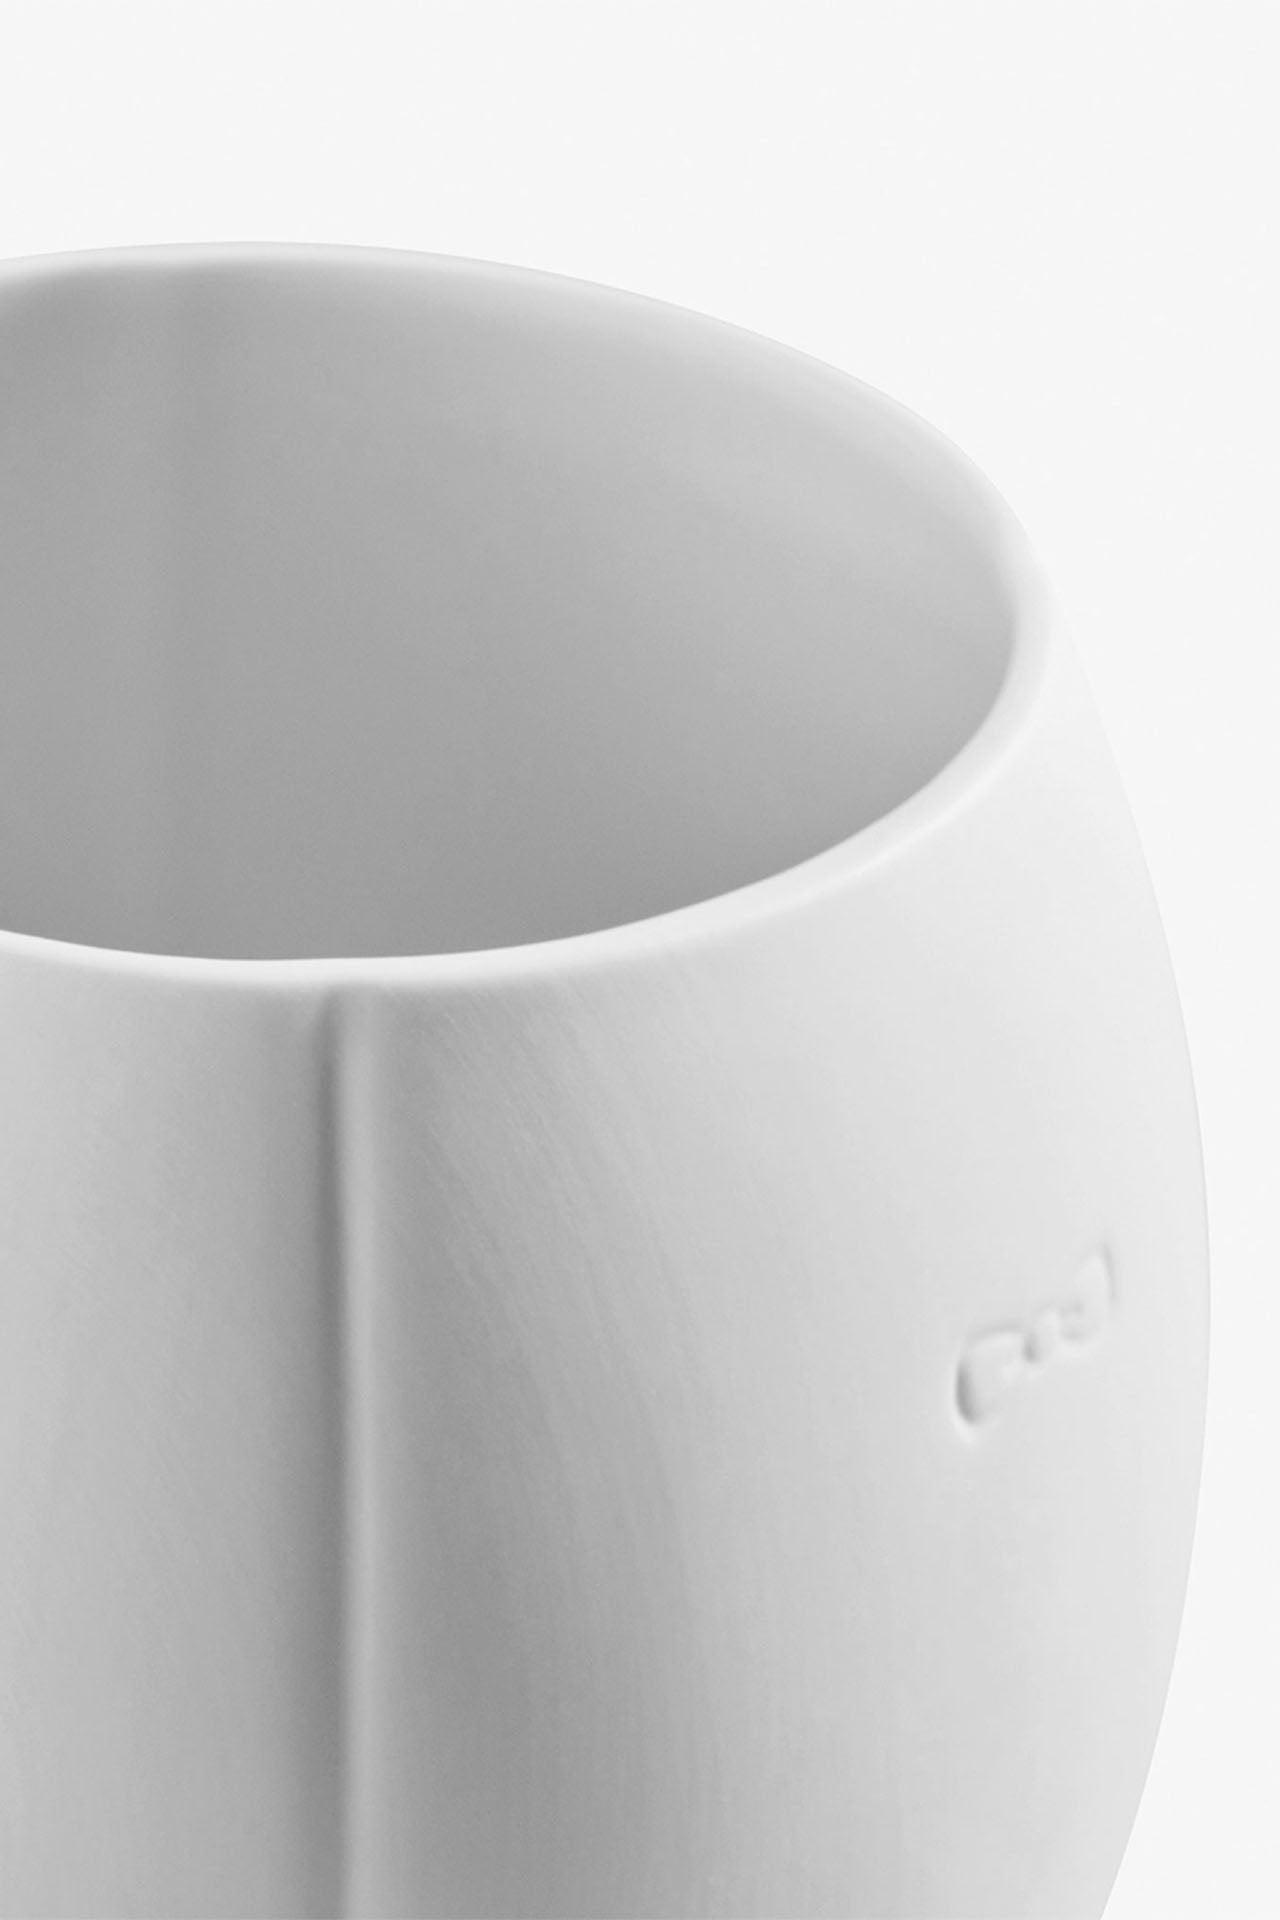 Mug blanc en porcelaine de Limoges - petit modèle